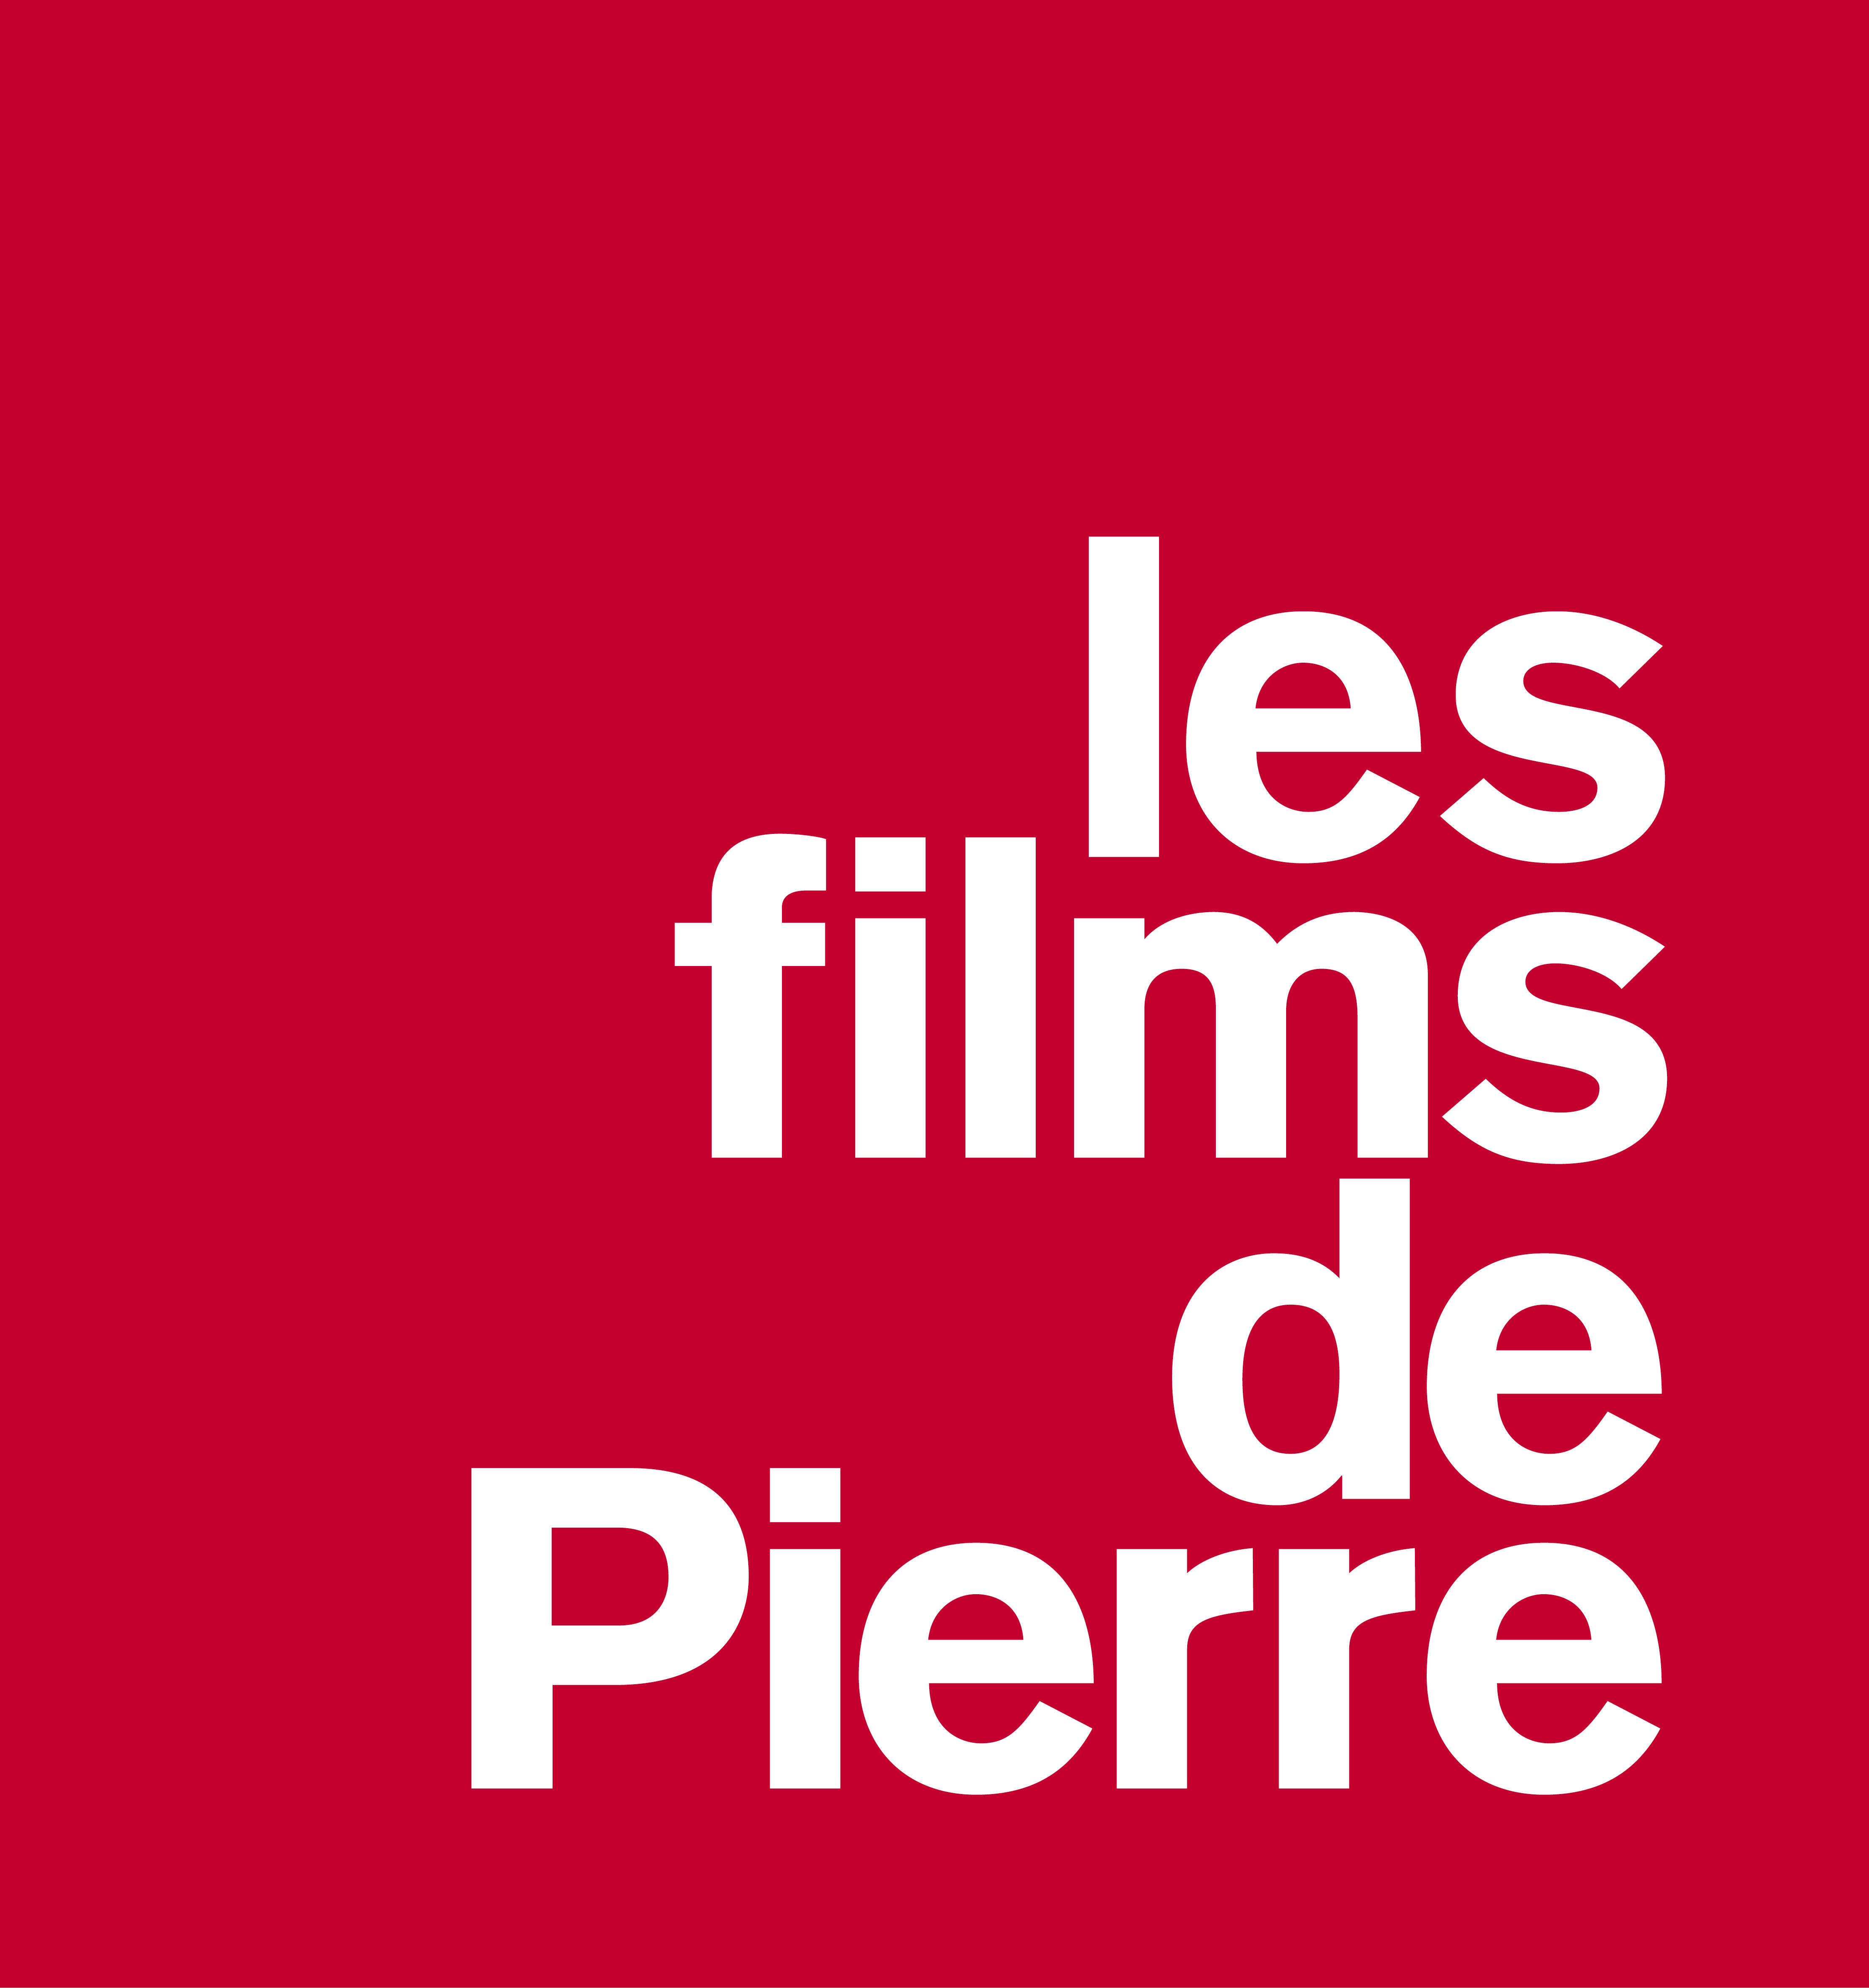 16 LesFilms de Pierre